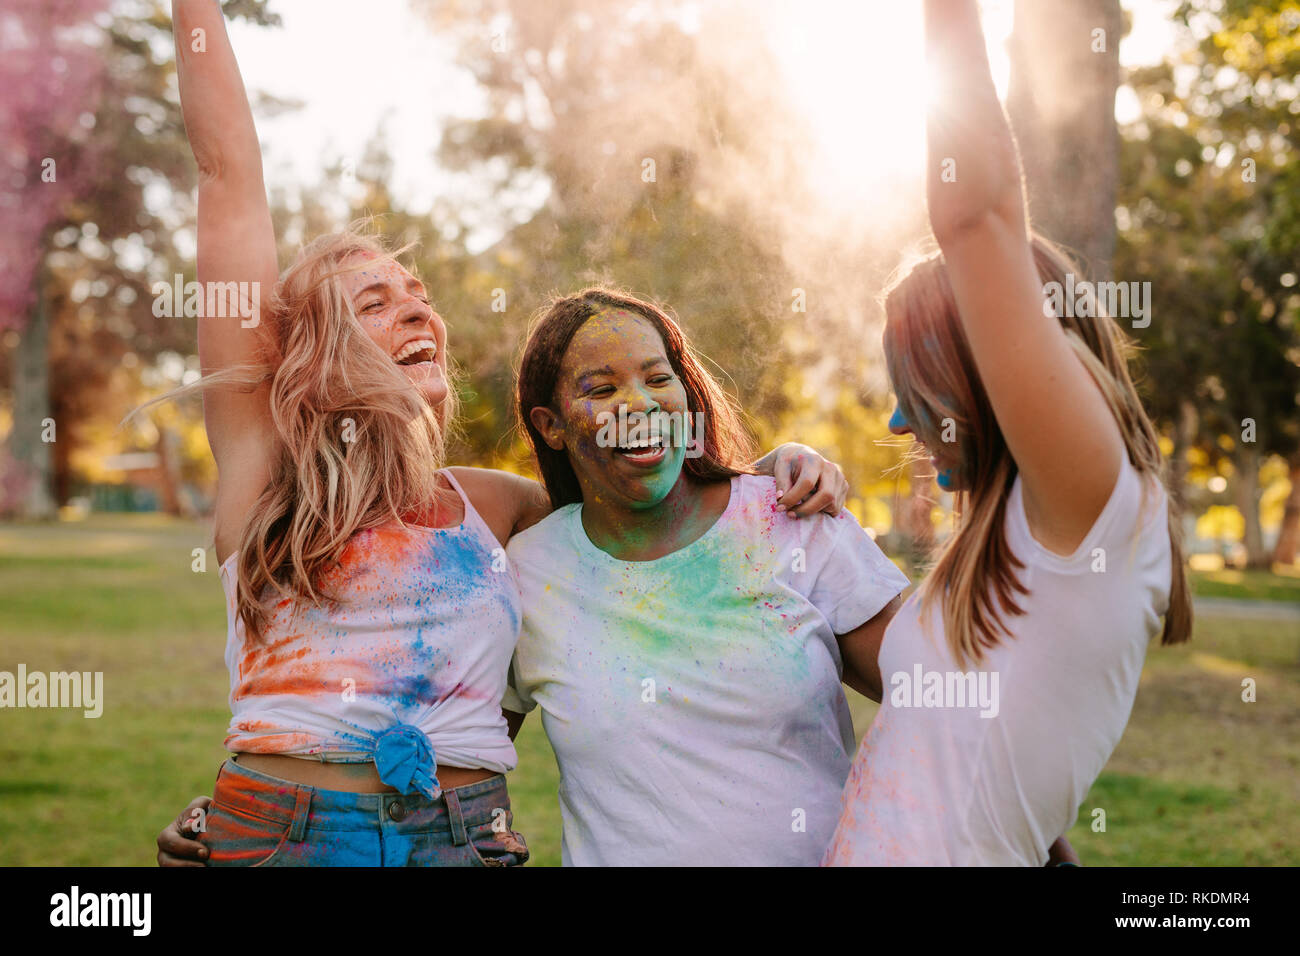 Frauen, die Freunde genießen Holi mit Puder Farben und Tanz in der Freude. Gruppe von drei Frauen, die Freunde holi Spielen in einem Park. Stockfoto